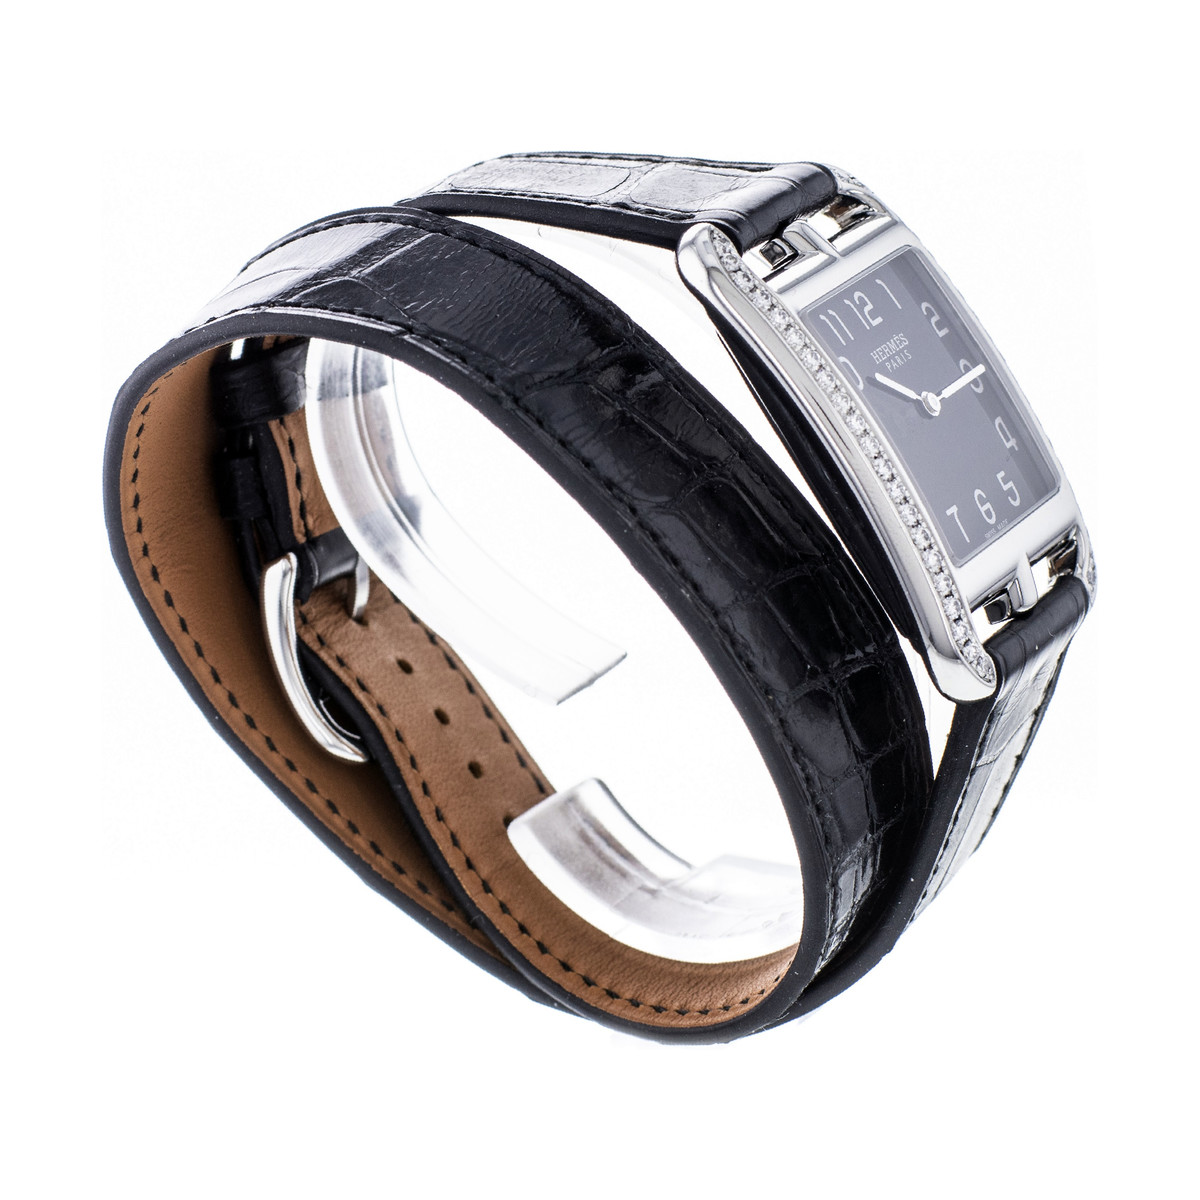 Montre d'occasion Hermès Cape Cod femme acier bracelet cuir noir - vue 4